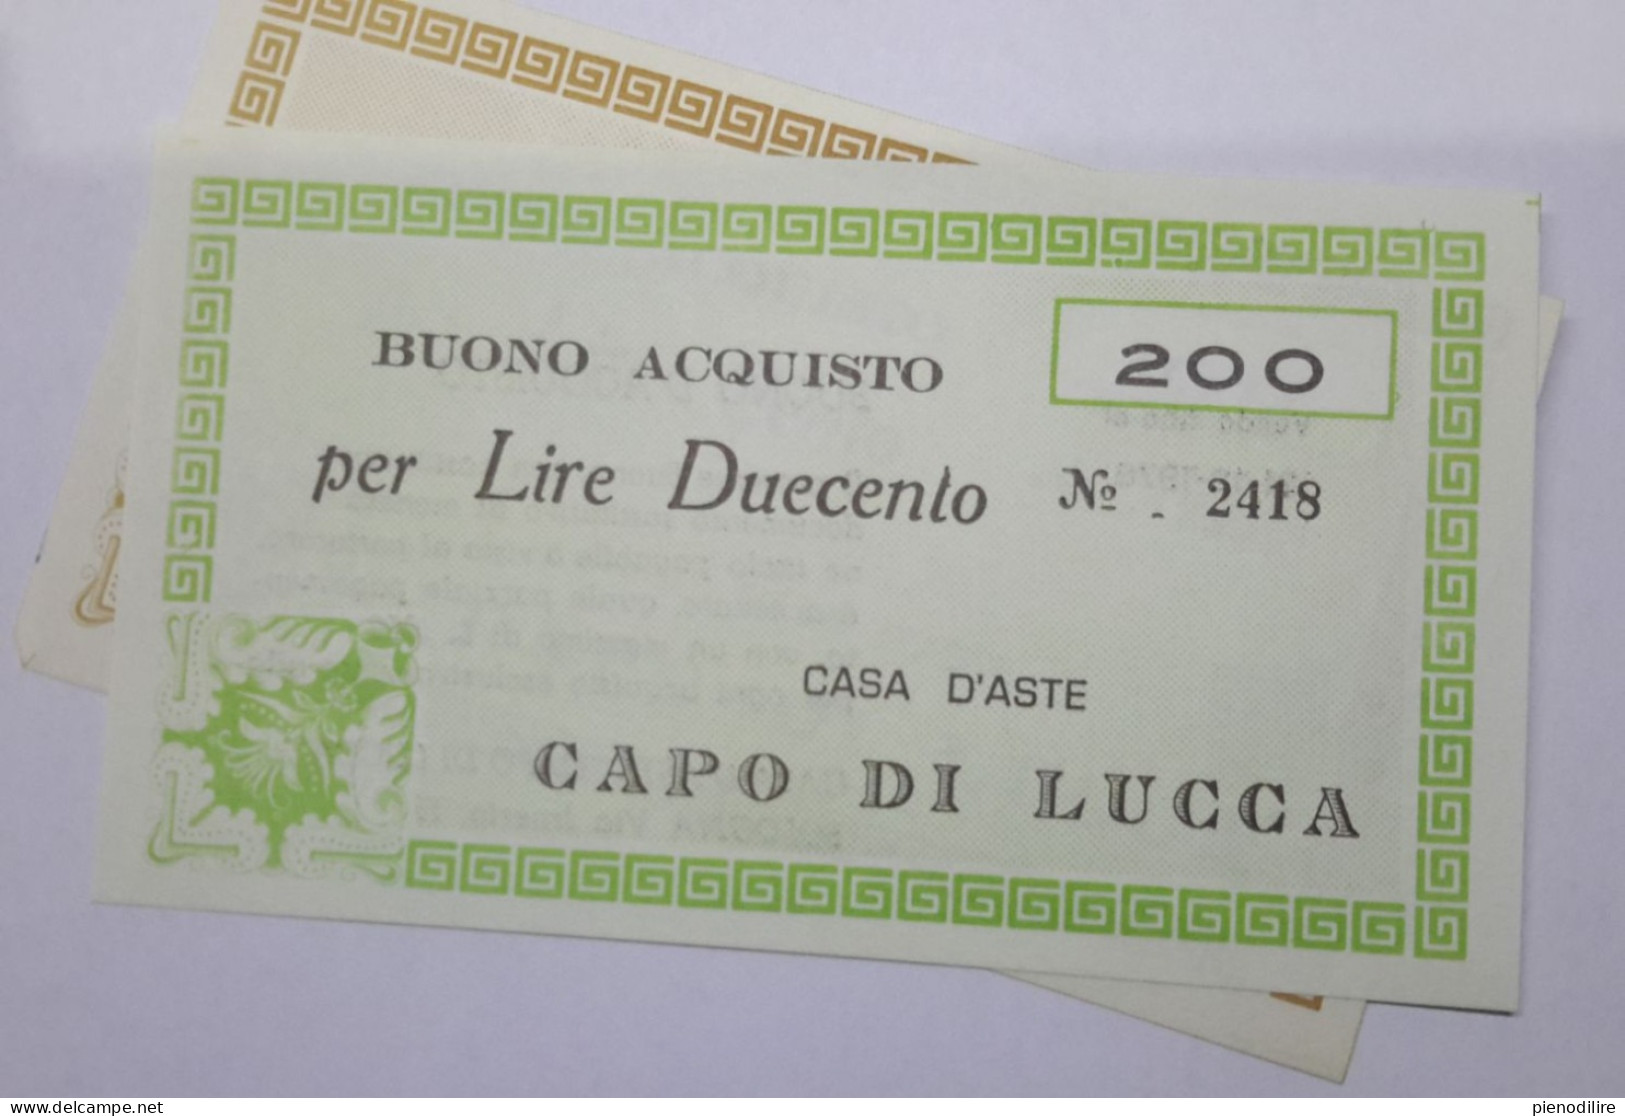 LOTTO 5Pz. 100 200 300 400 LIRE BUONI ACQUISTO CASA D'ASTE CAPO DI LUCCA VALIDO FINO AL 31.12.1976 (A.1) - [10] Checks And Mini-checks